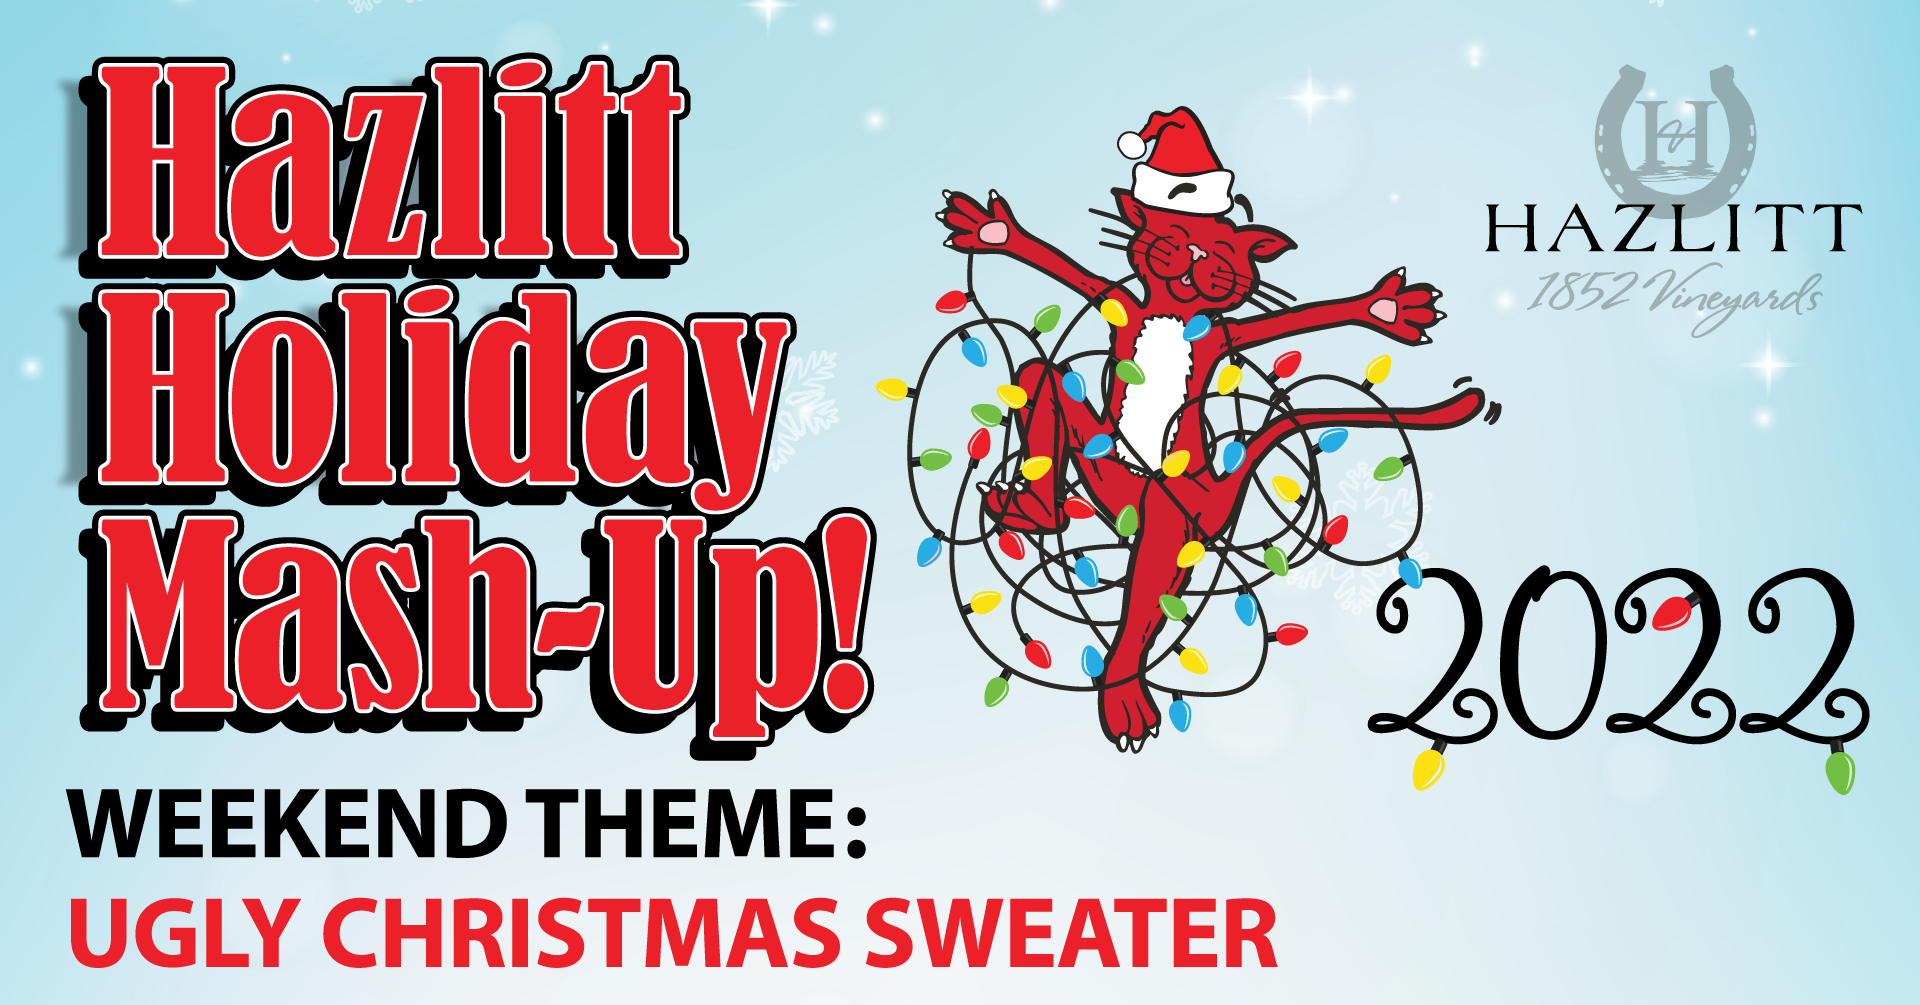 Hazlitt Holiday Mash-Up! Weekend Theme: Ugly Christmas Sweater